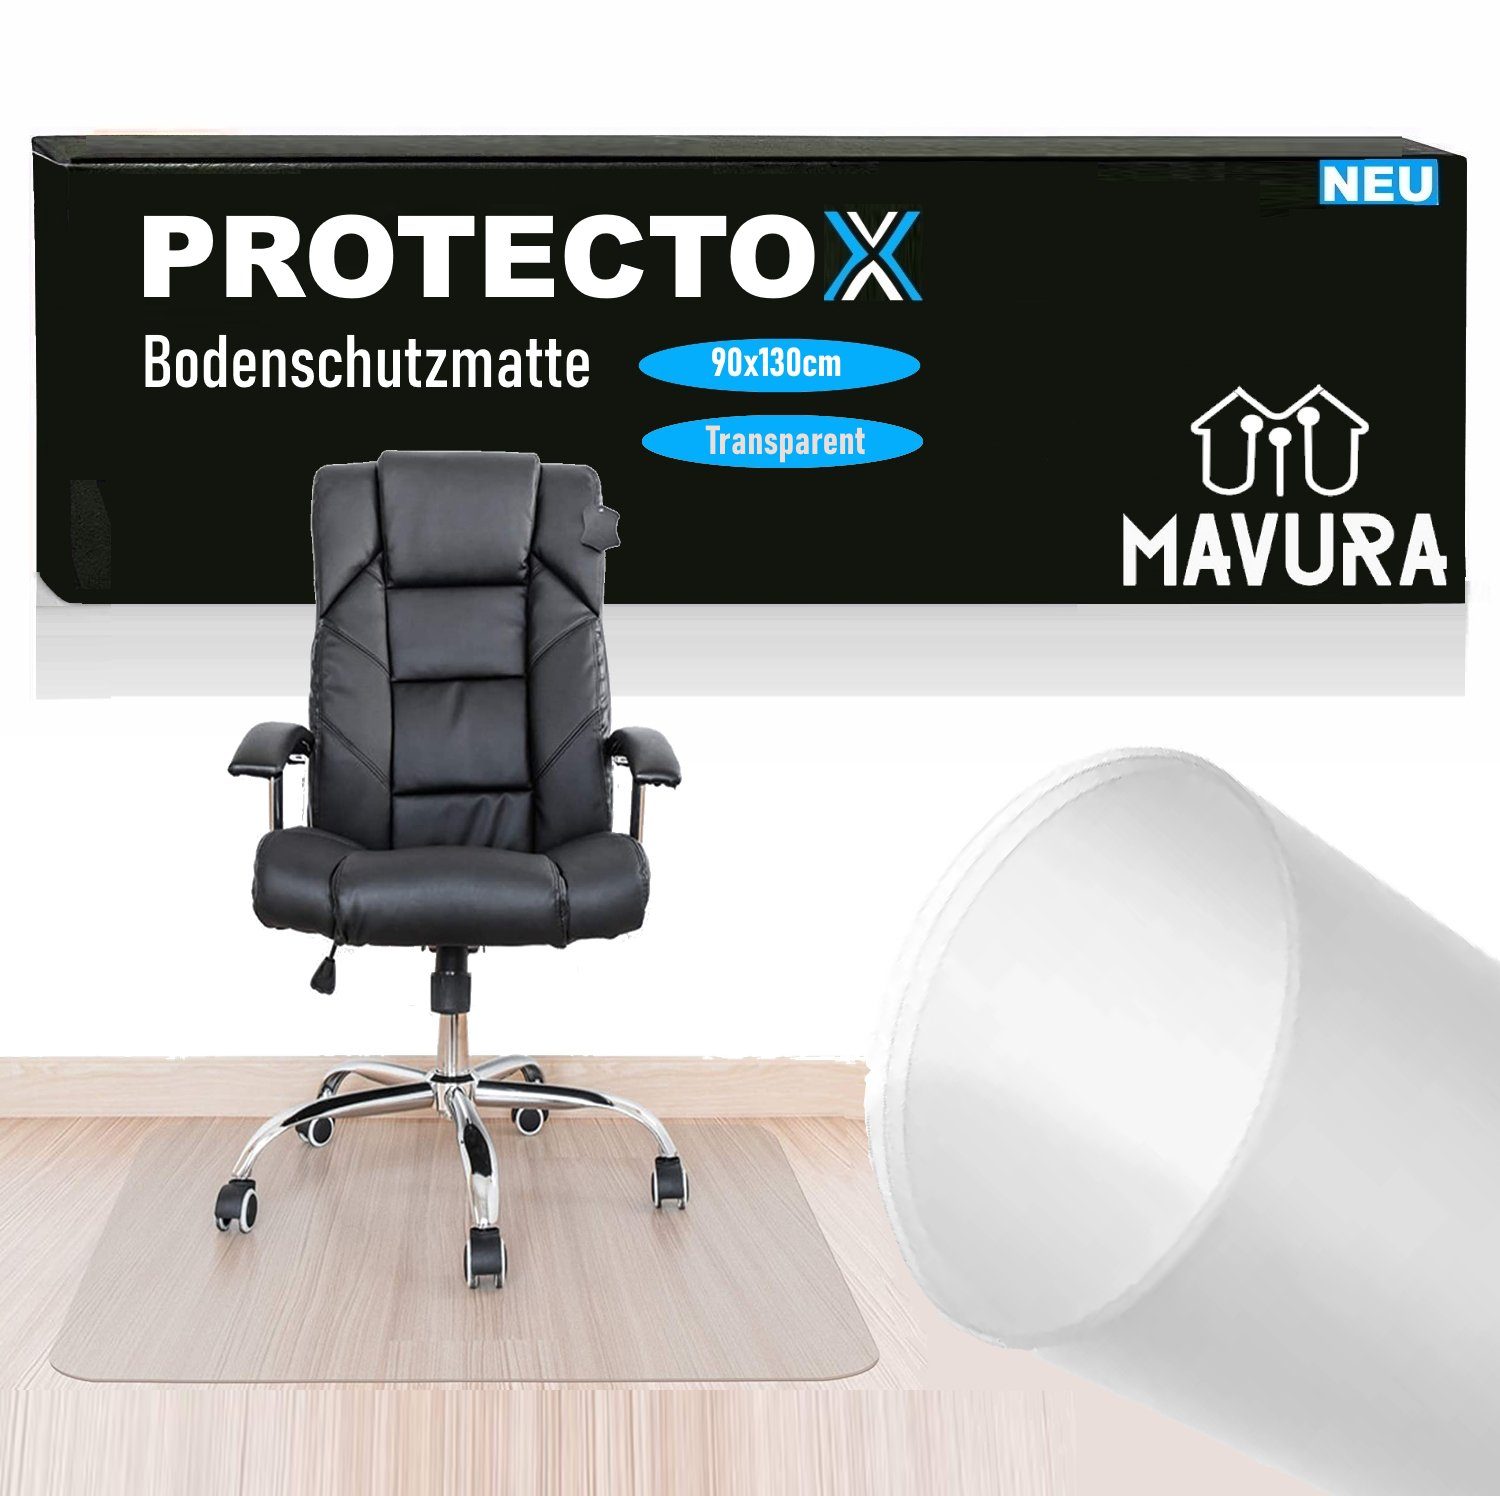 MAVURA Bodenschutzmatte PROTECTOX Bürostuhl Unterlage Transparent  Fußbodenschutz, Stuhlmatte Antirutsch & Kratzfest 90x130cm